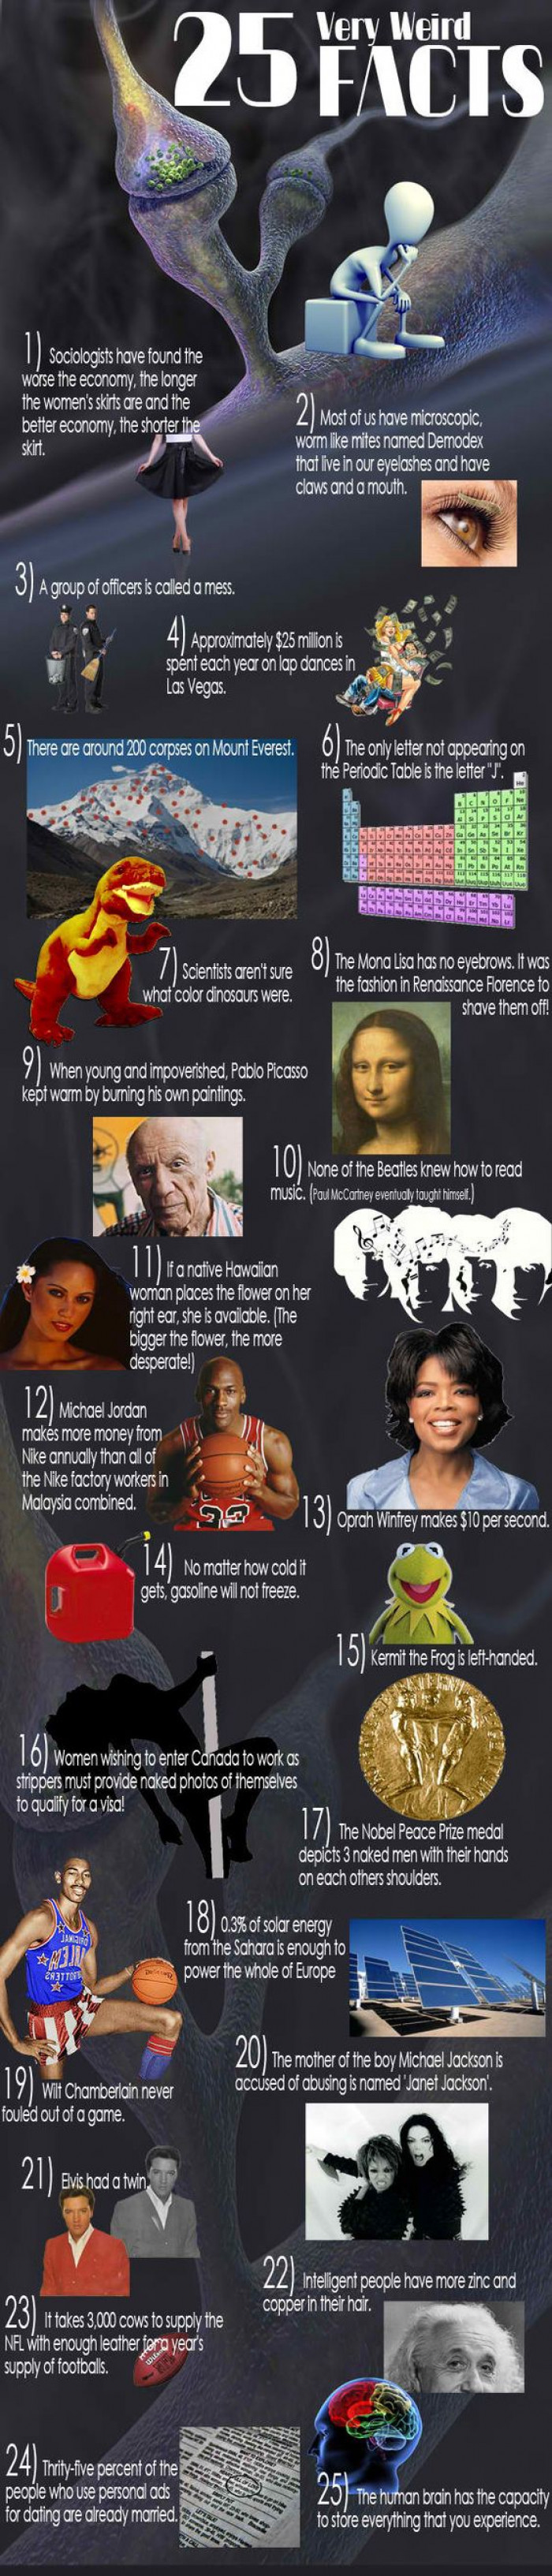 25 Very Weird Facts